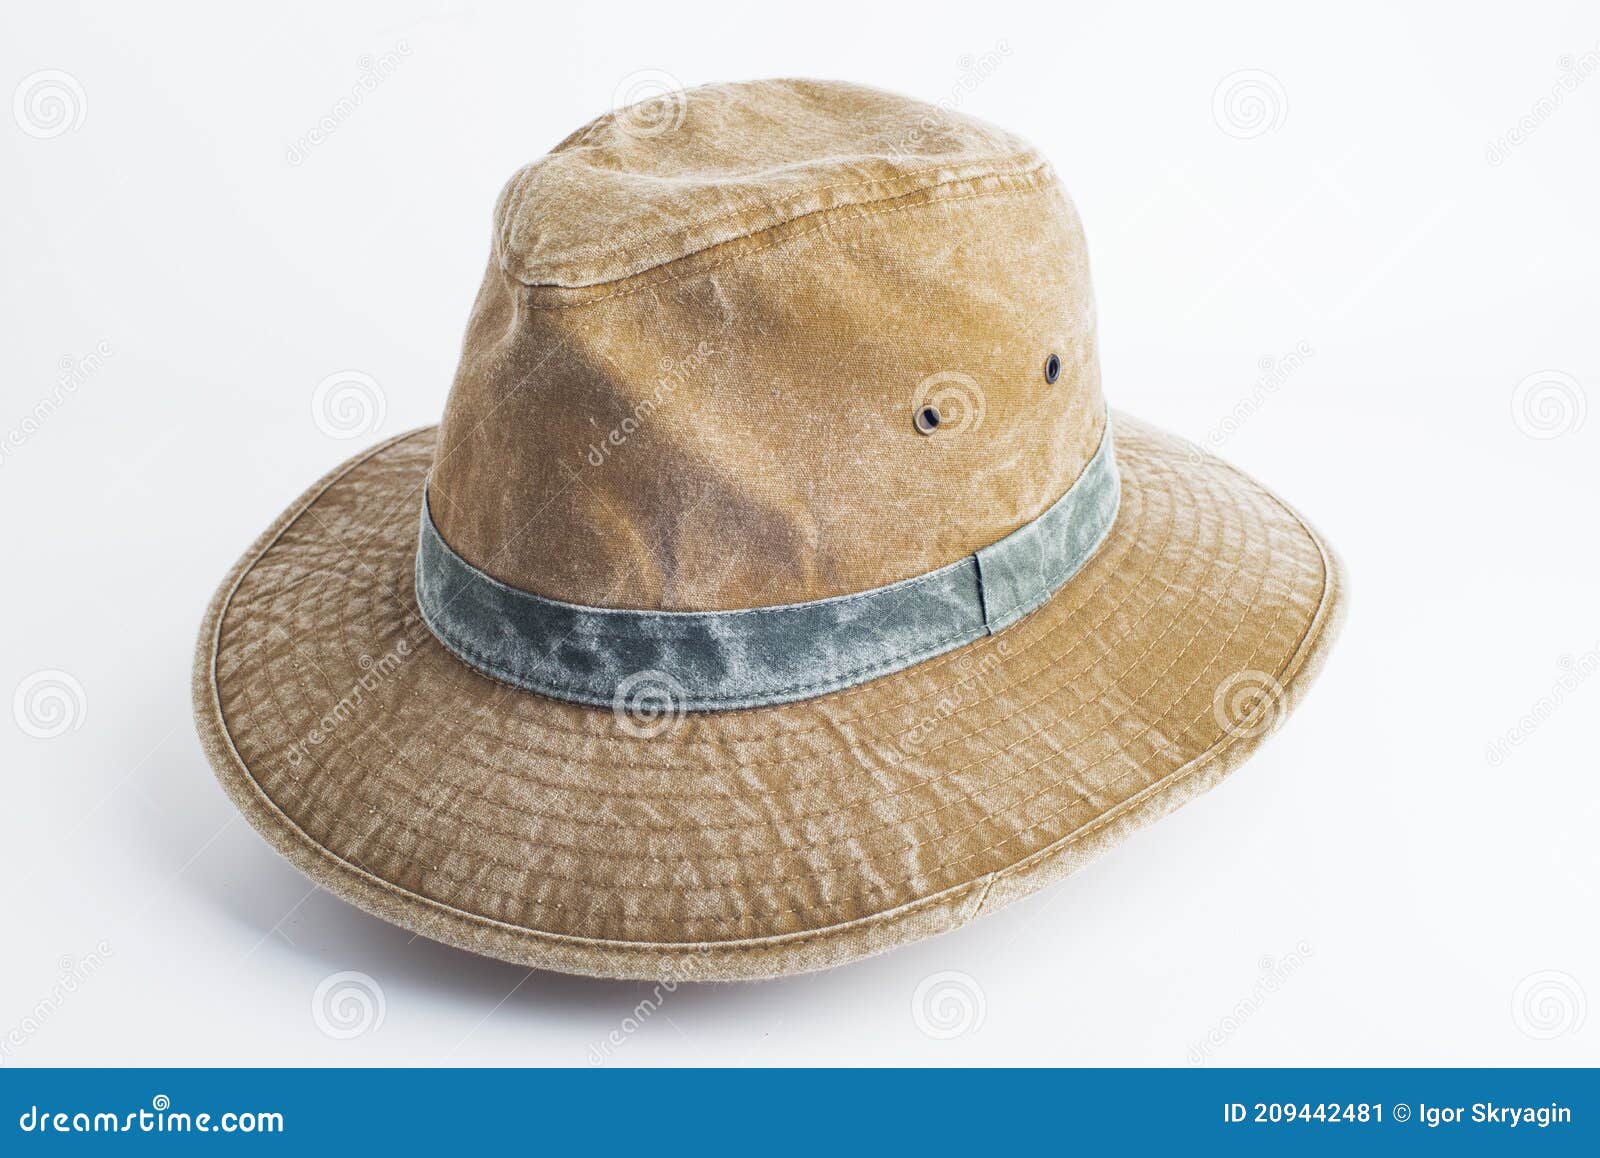 Sombrero De Lona Amarilla Fondo Blanco de archivo - Imagen de rural: 209442481